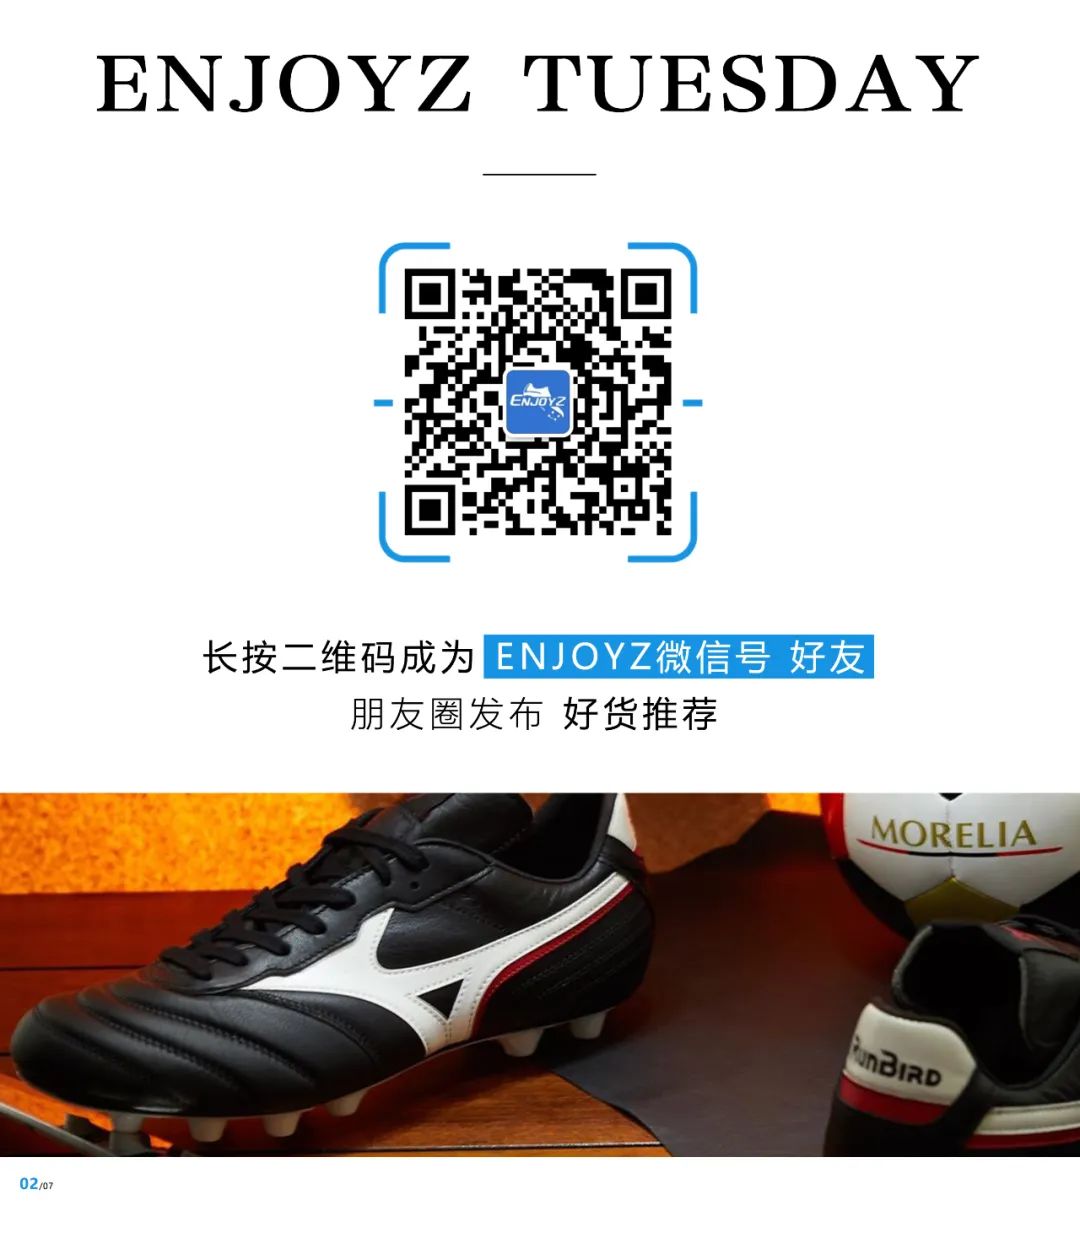 足球买球怎么买_北京 买足球鞋_足球ag钉子鞋马路上穿舒服吗？